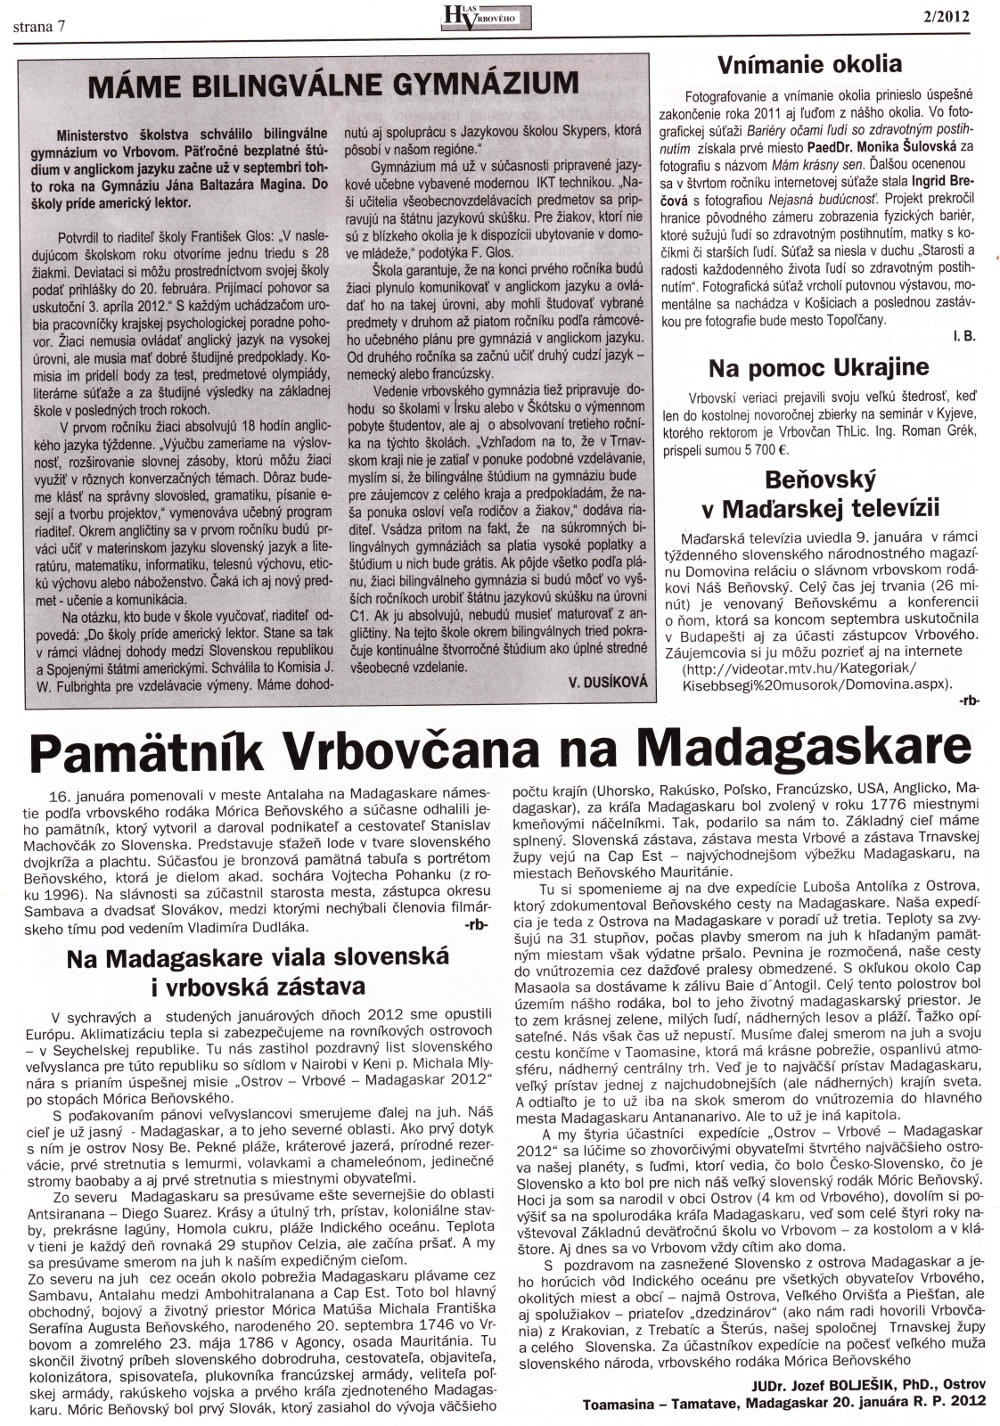 Hlas Vrbového 02/2012, strana 7